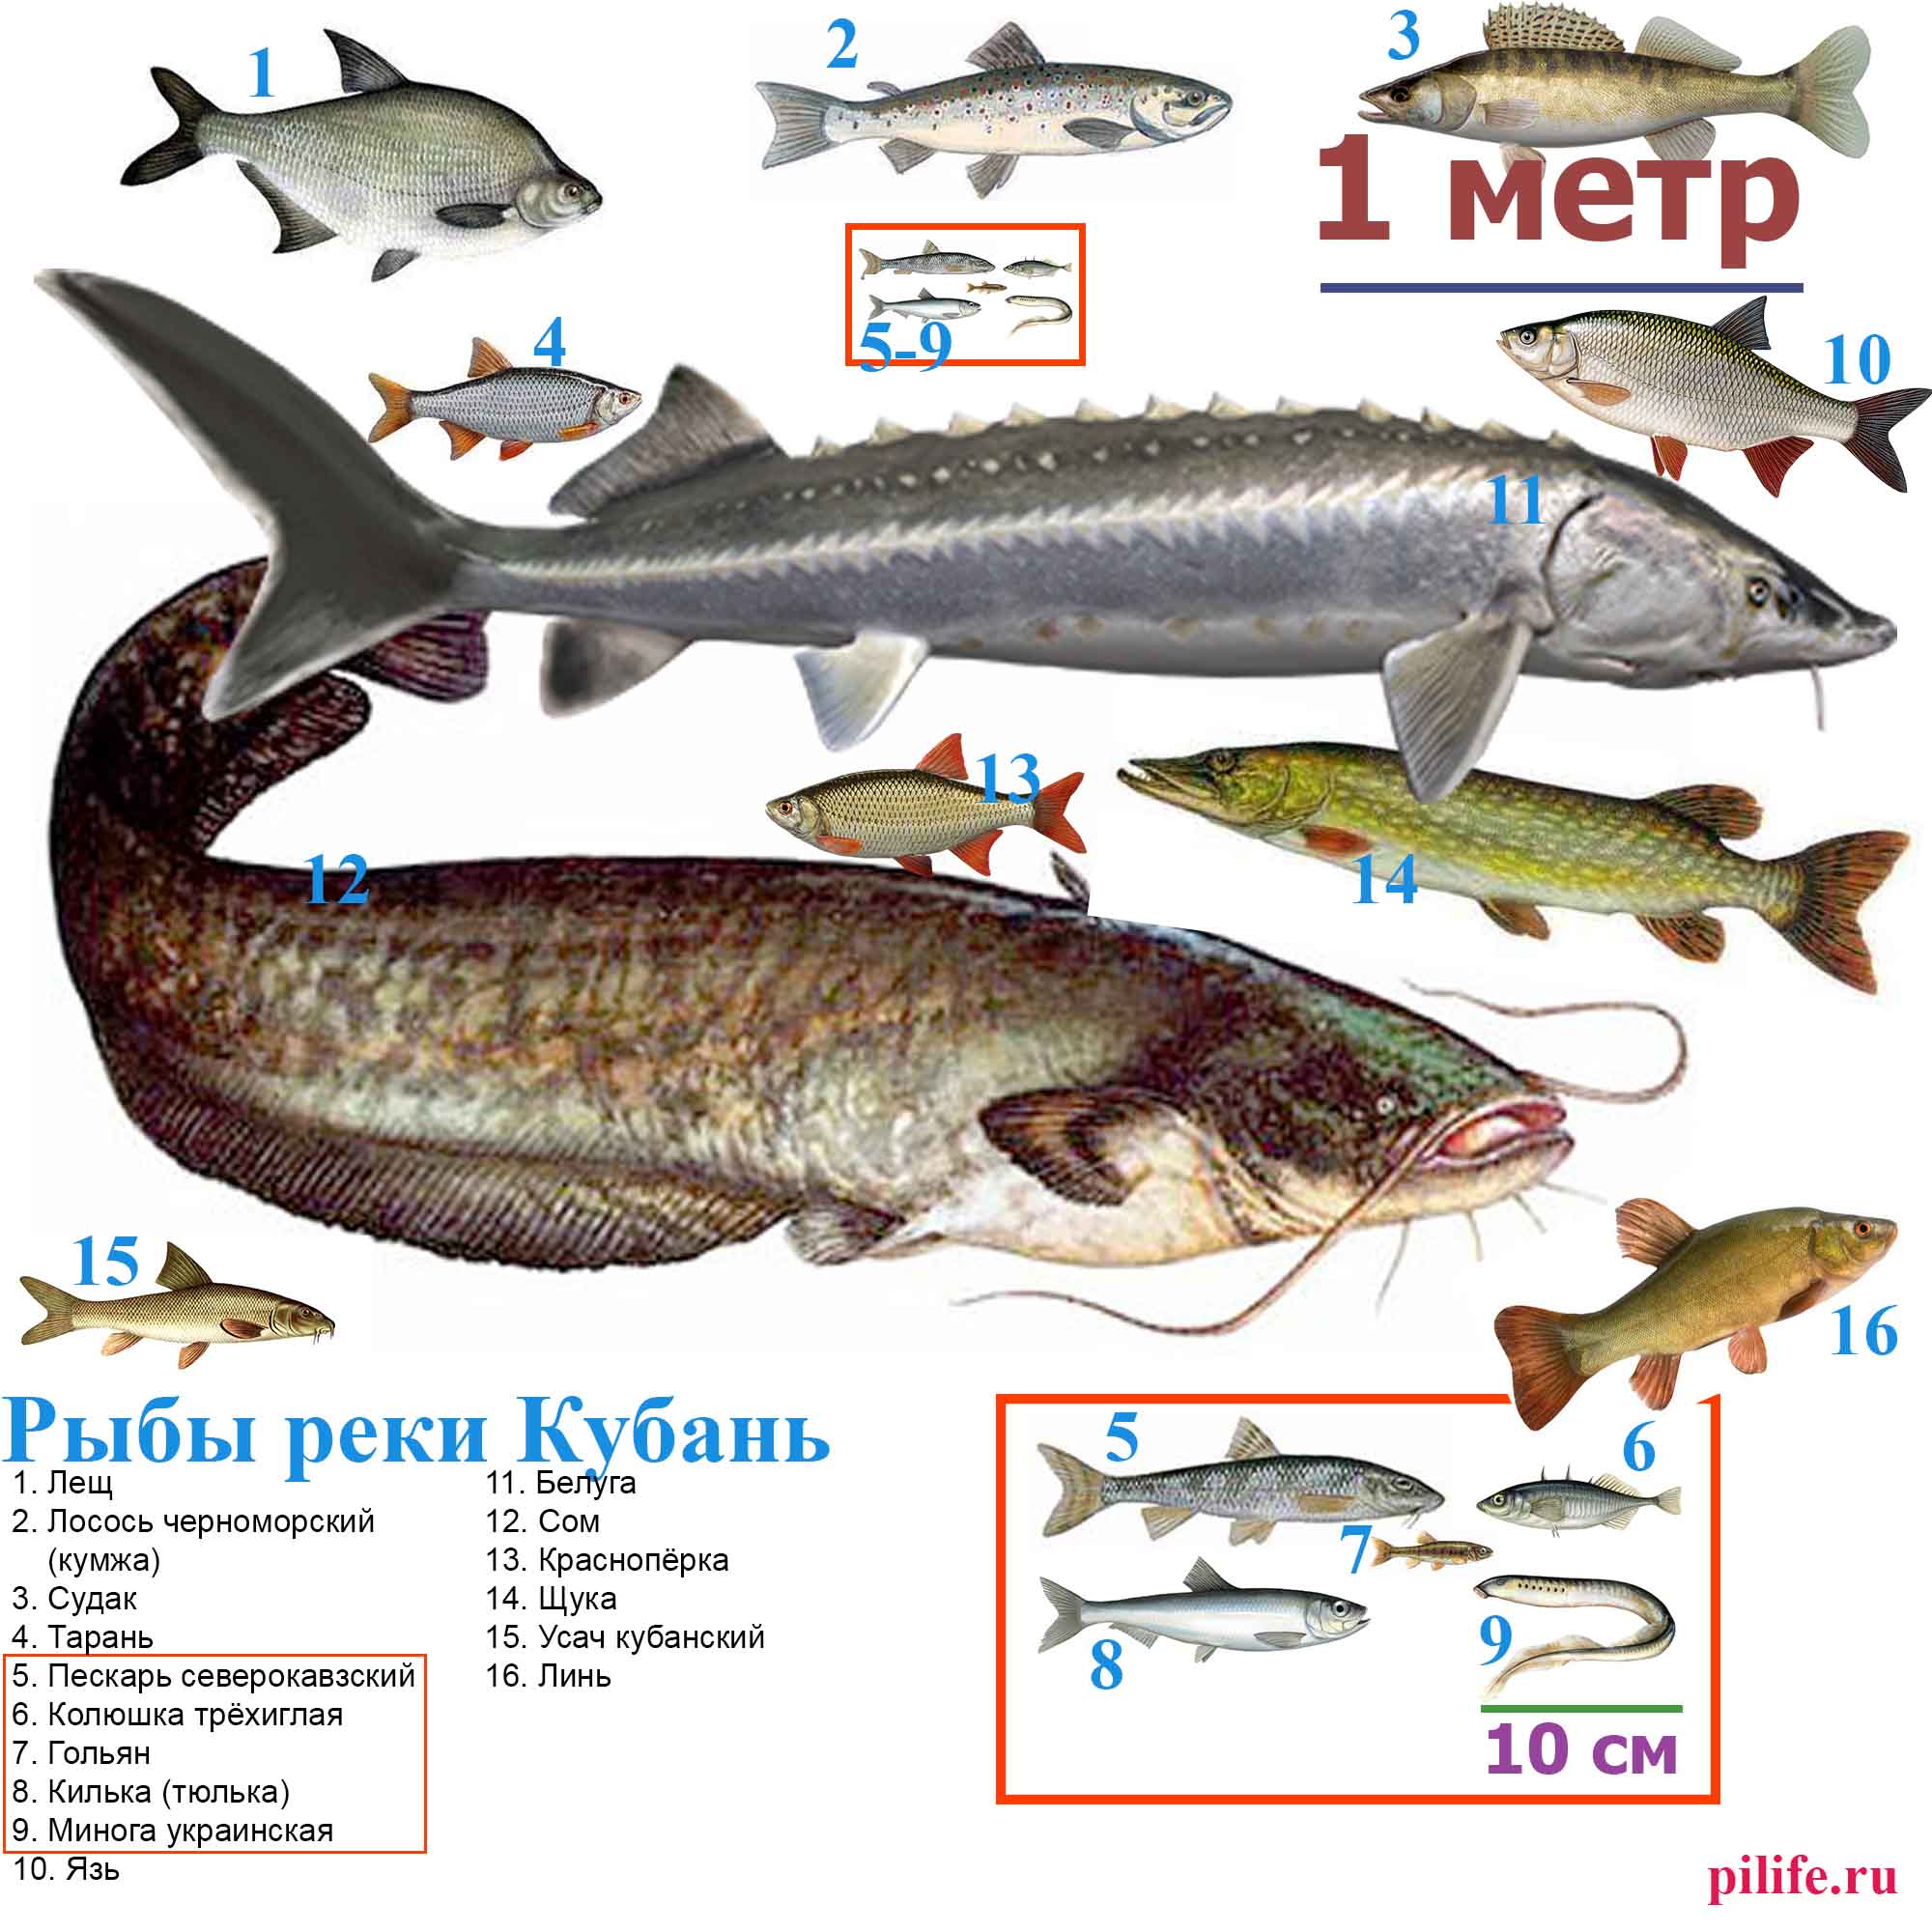 Рыбы реки Кубань в масштабе